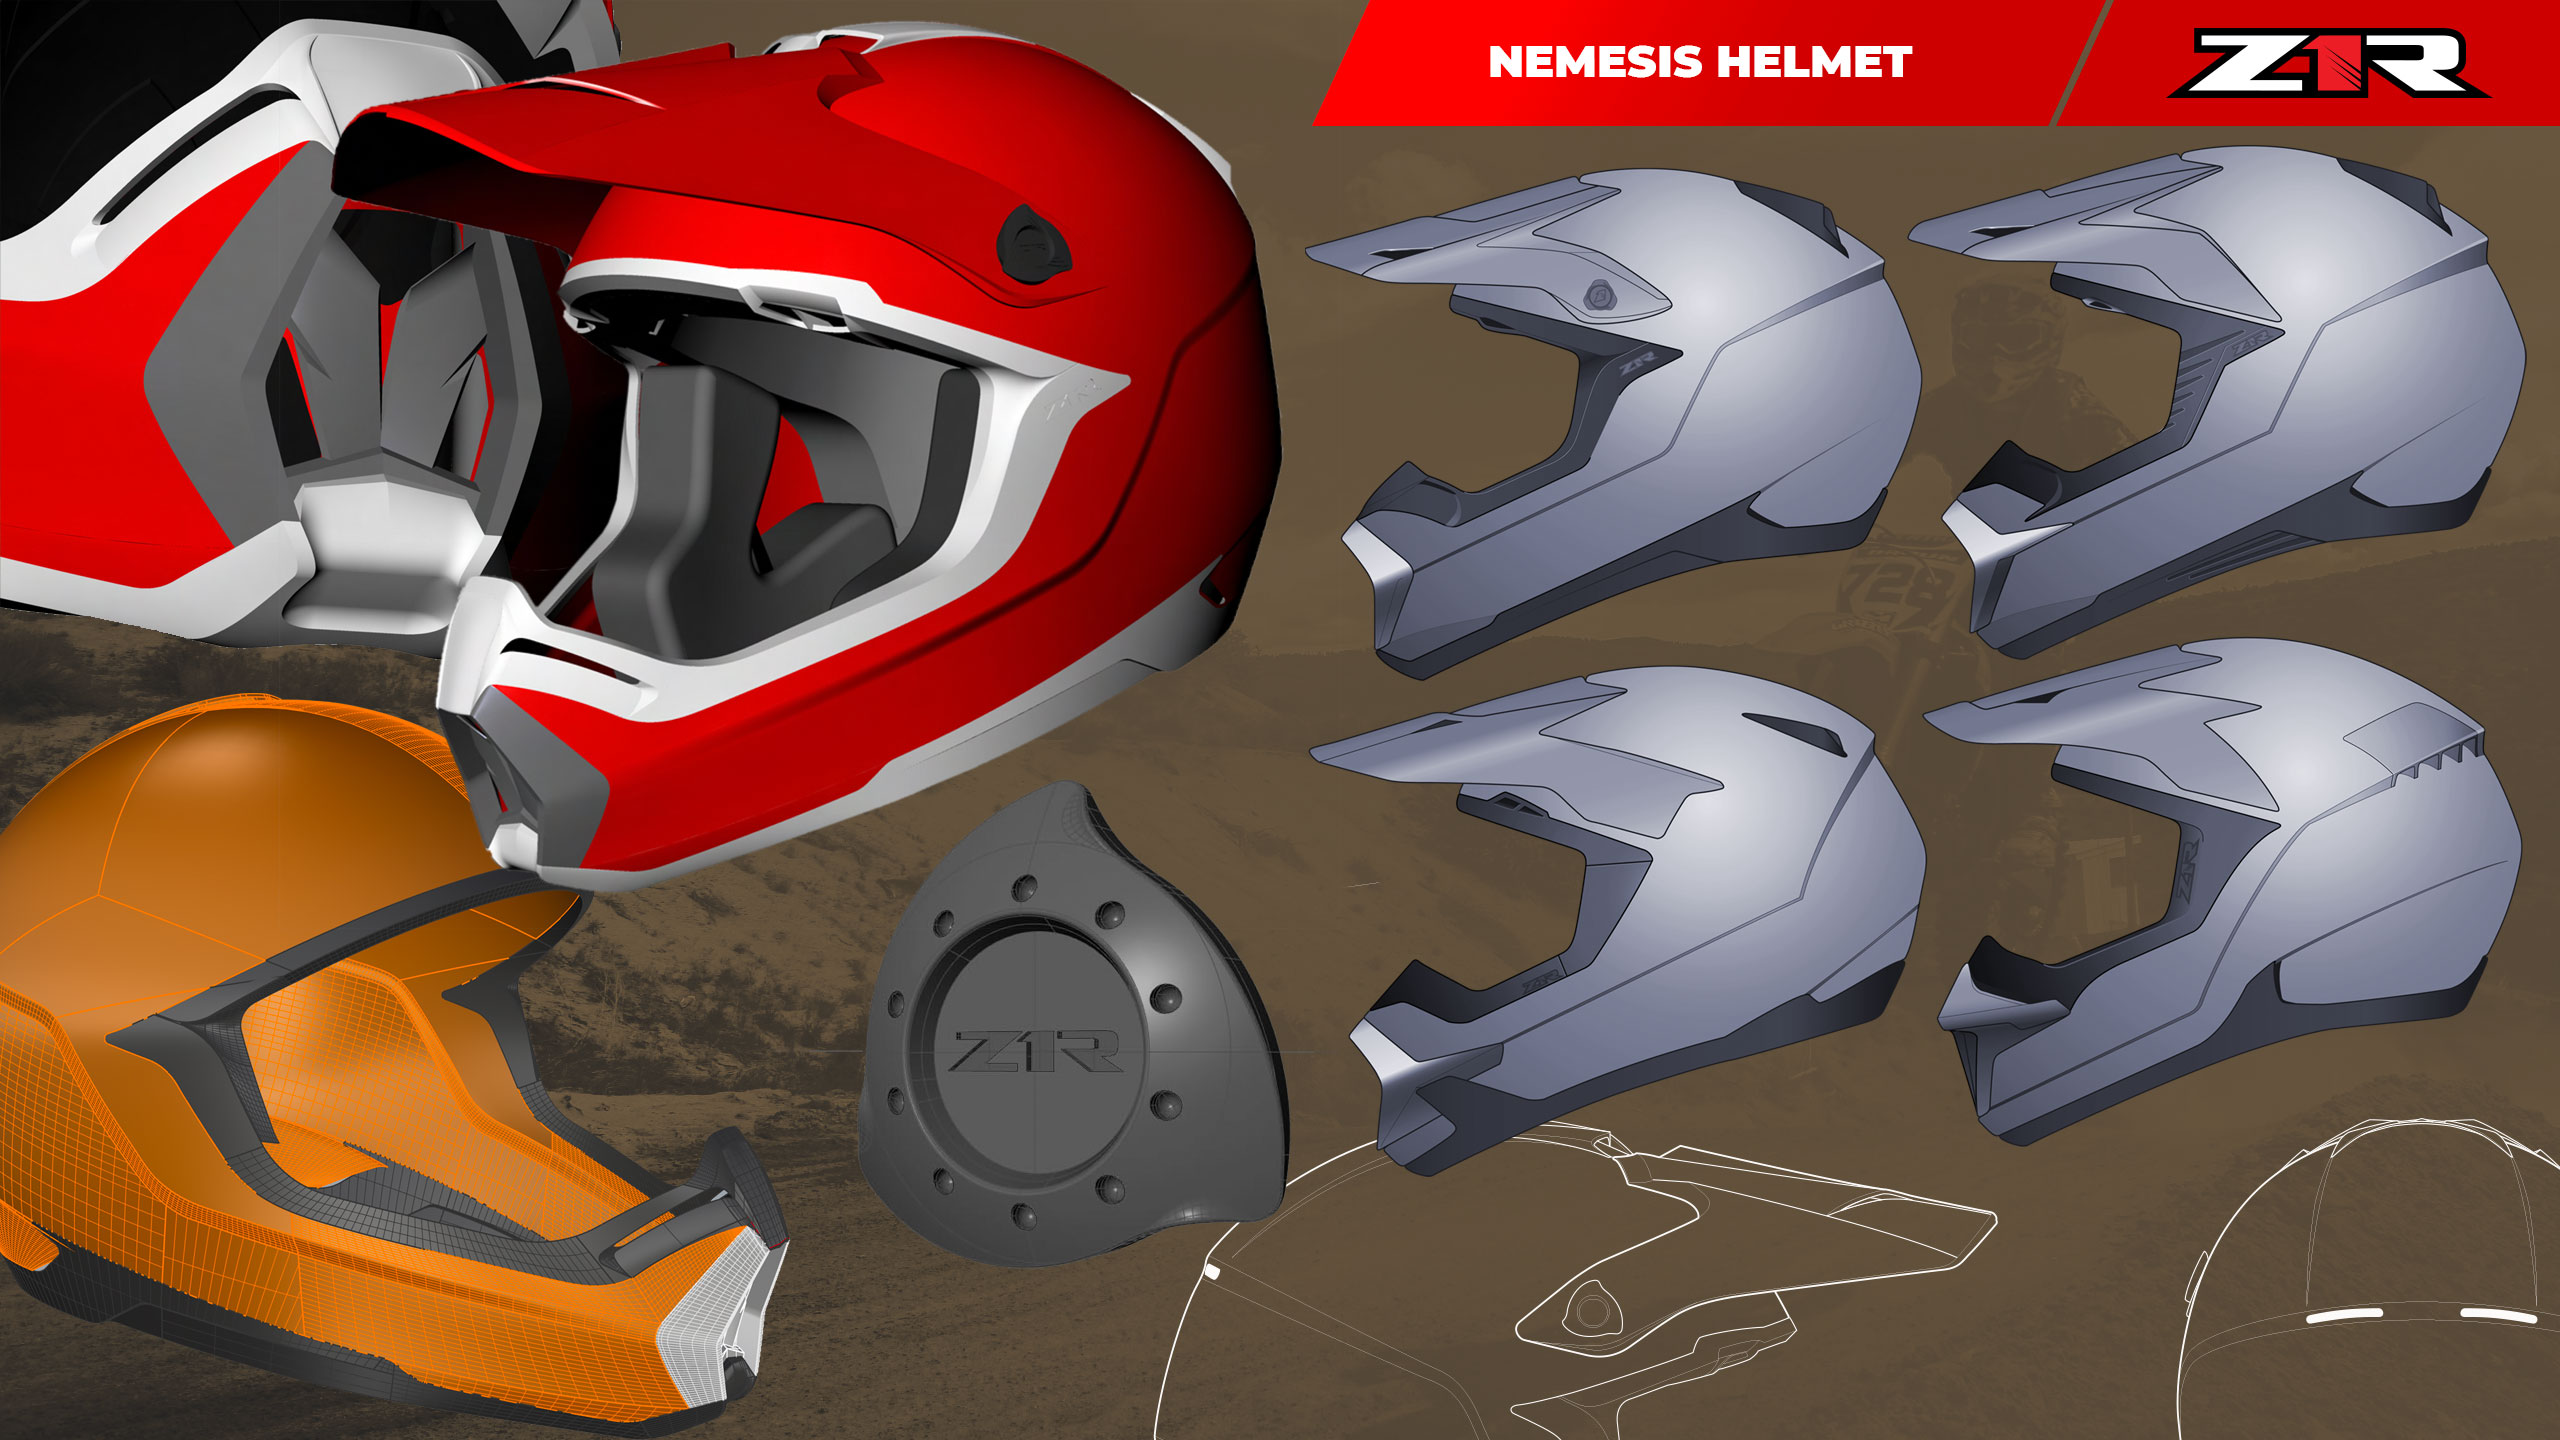 Z1R Nemesis Helmet